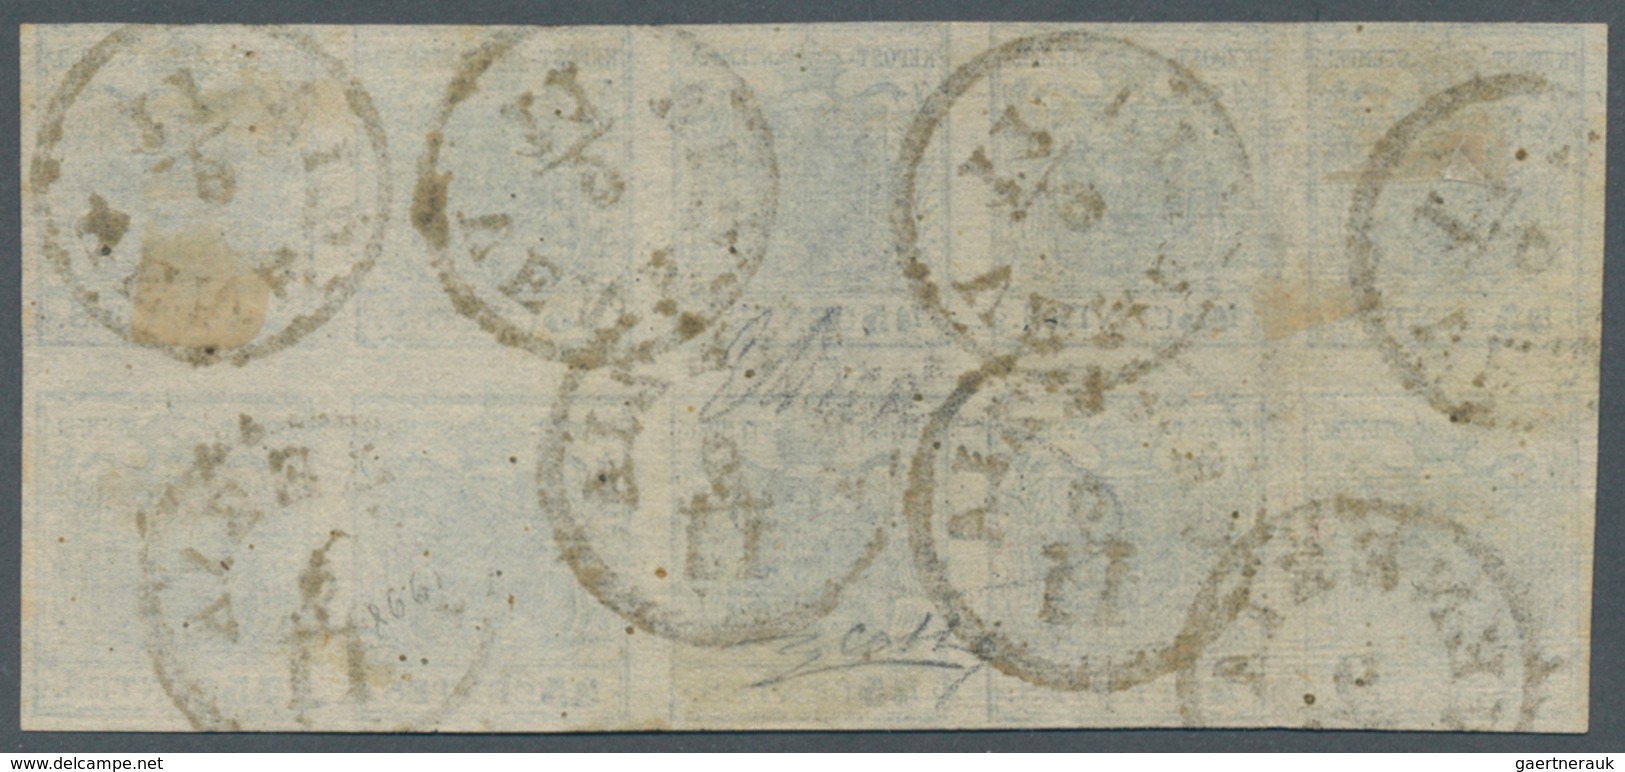 01878 Österreich - Lombardei Und Venetien: 1850: Zehnerblock Der 45 Centesimi Marke Der Seltenen Type I (S - Lombardo-Venetien